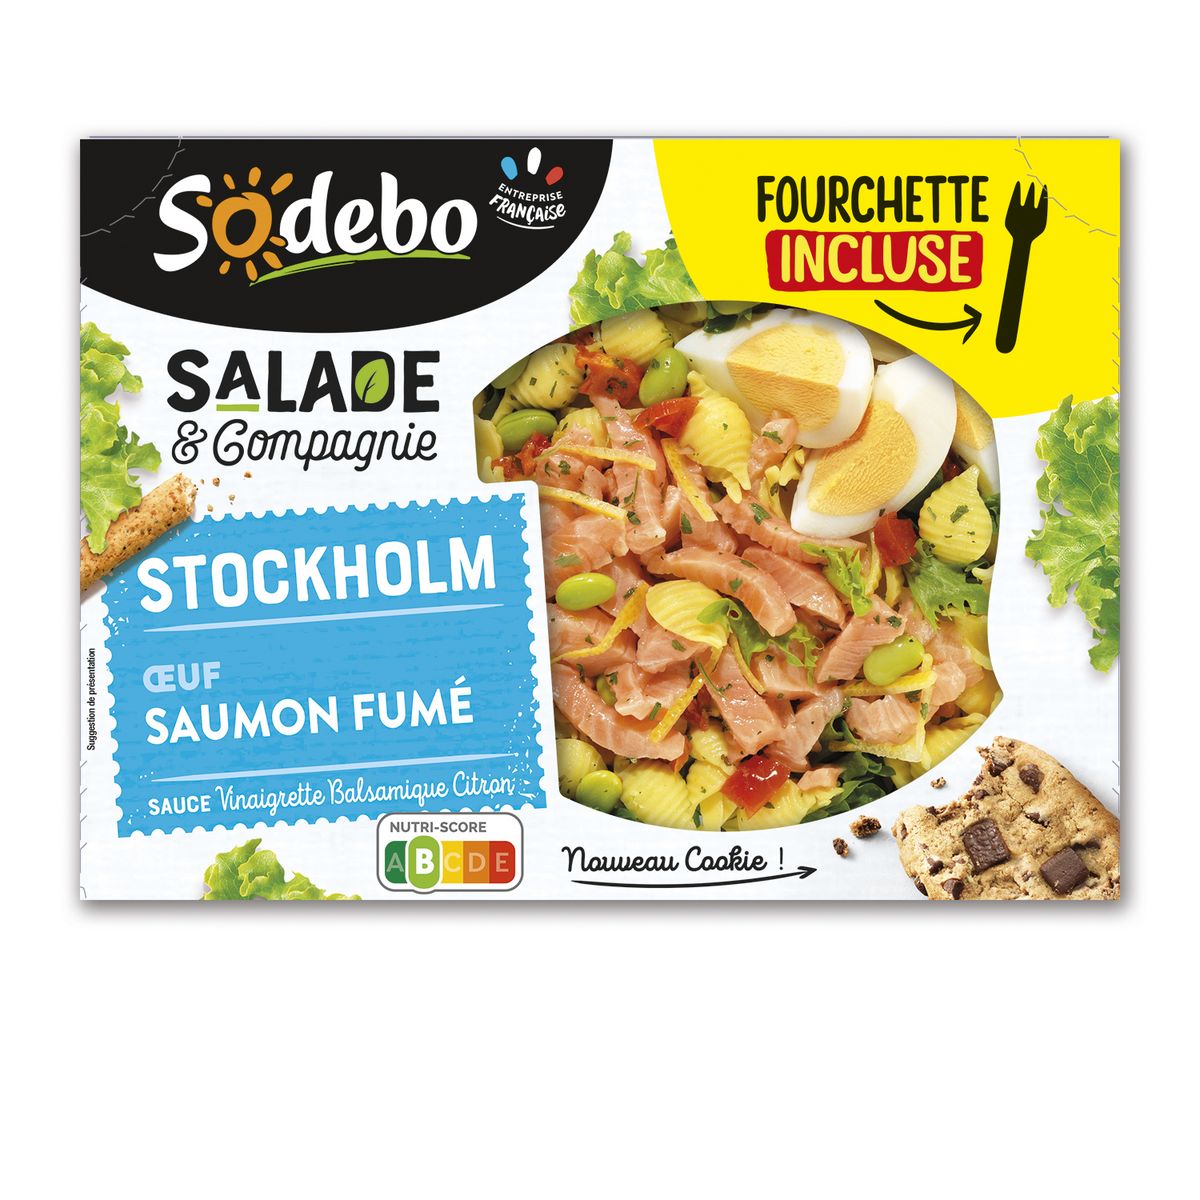 SODEBO Salade & compagnie stockholm saumon crudités pâtes 1 portion 320g